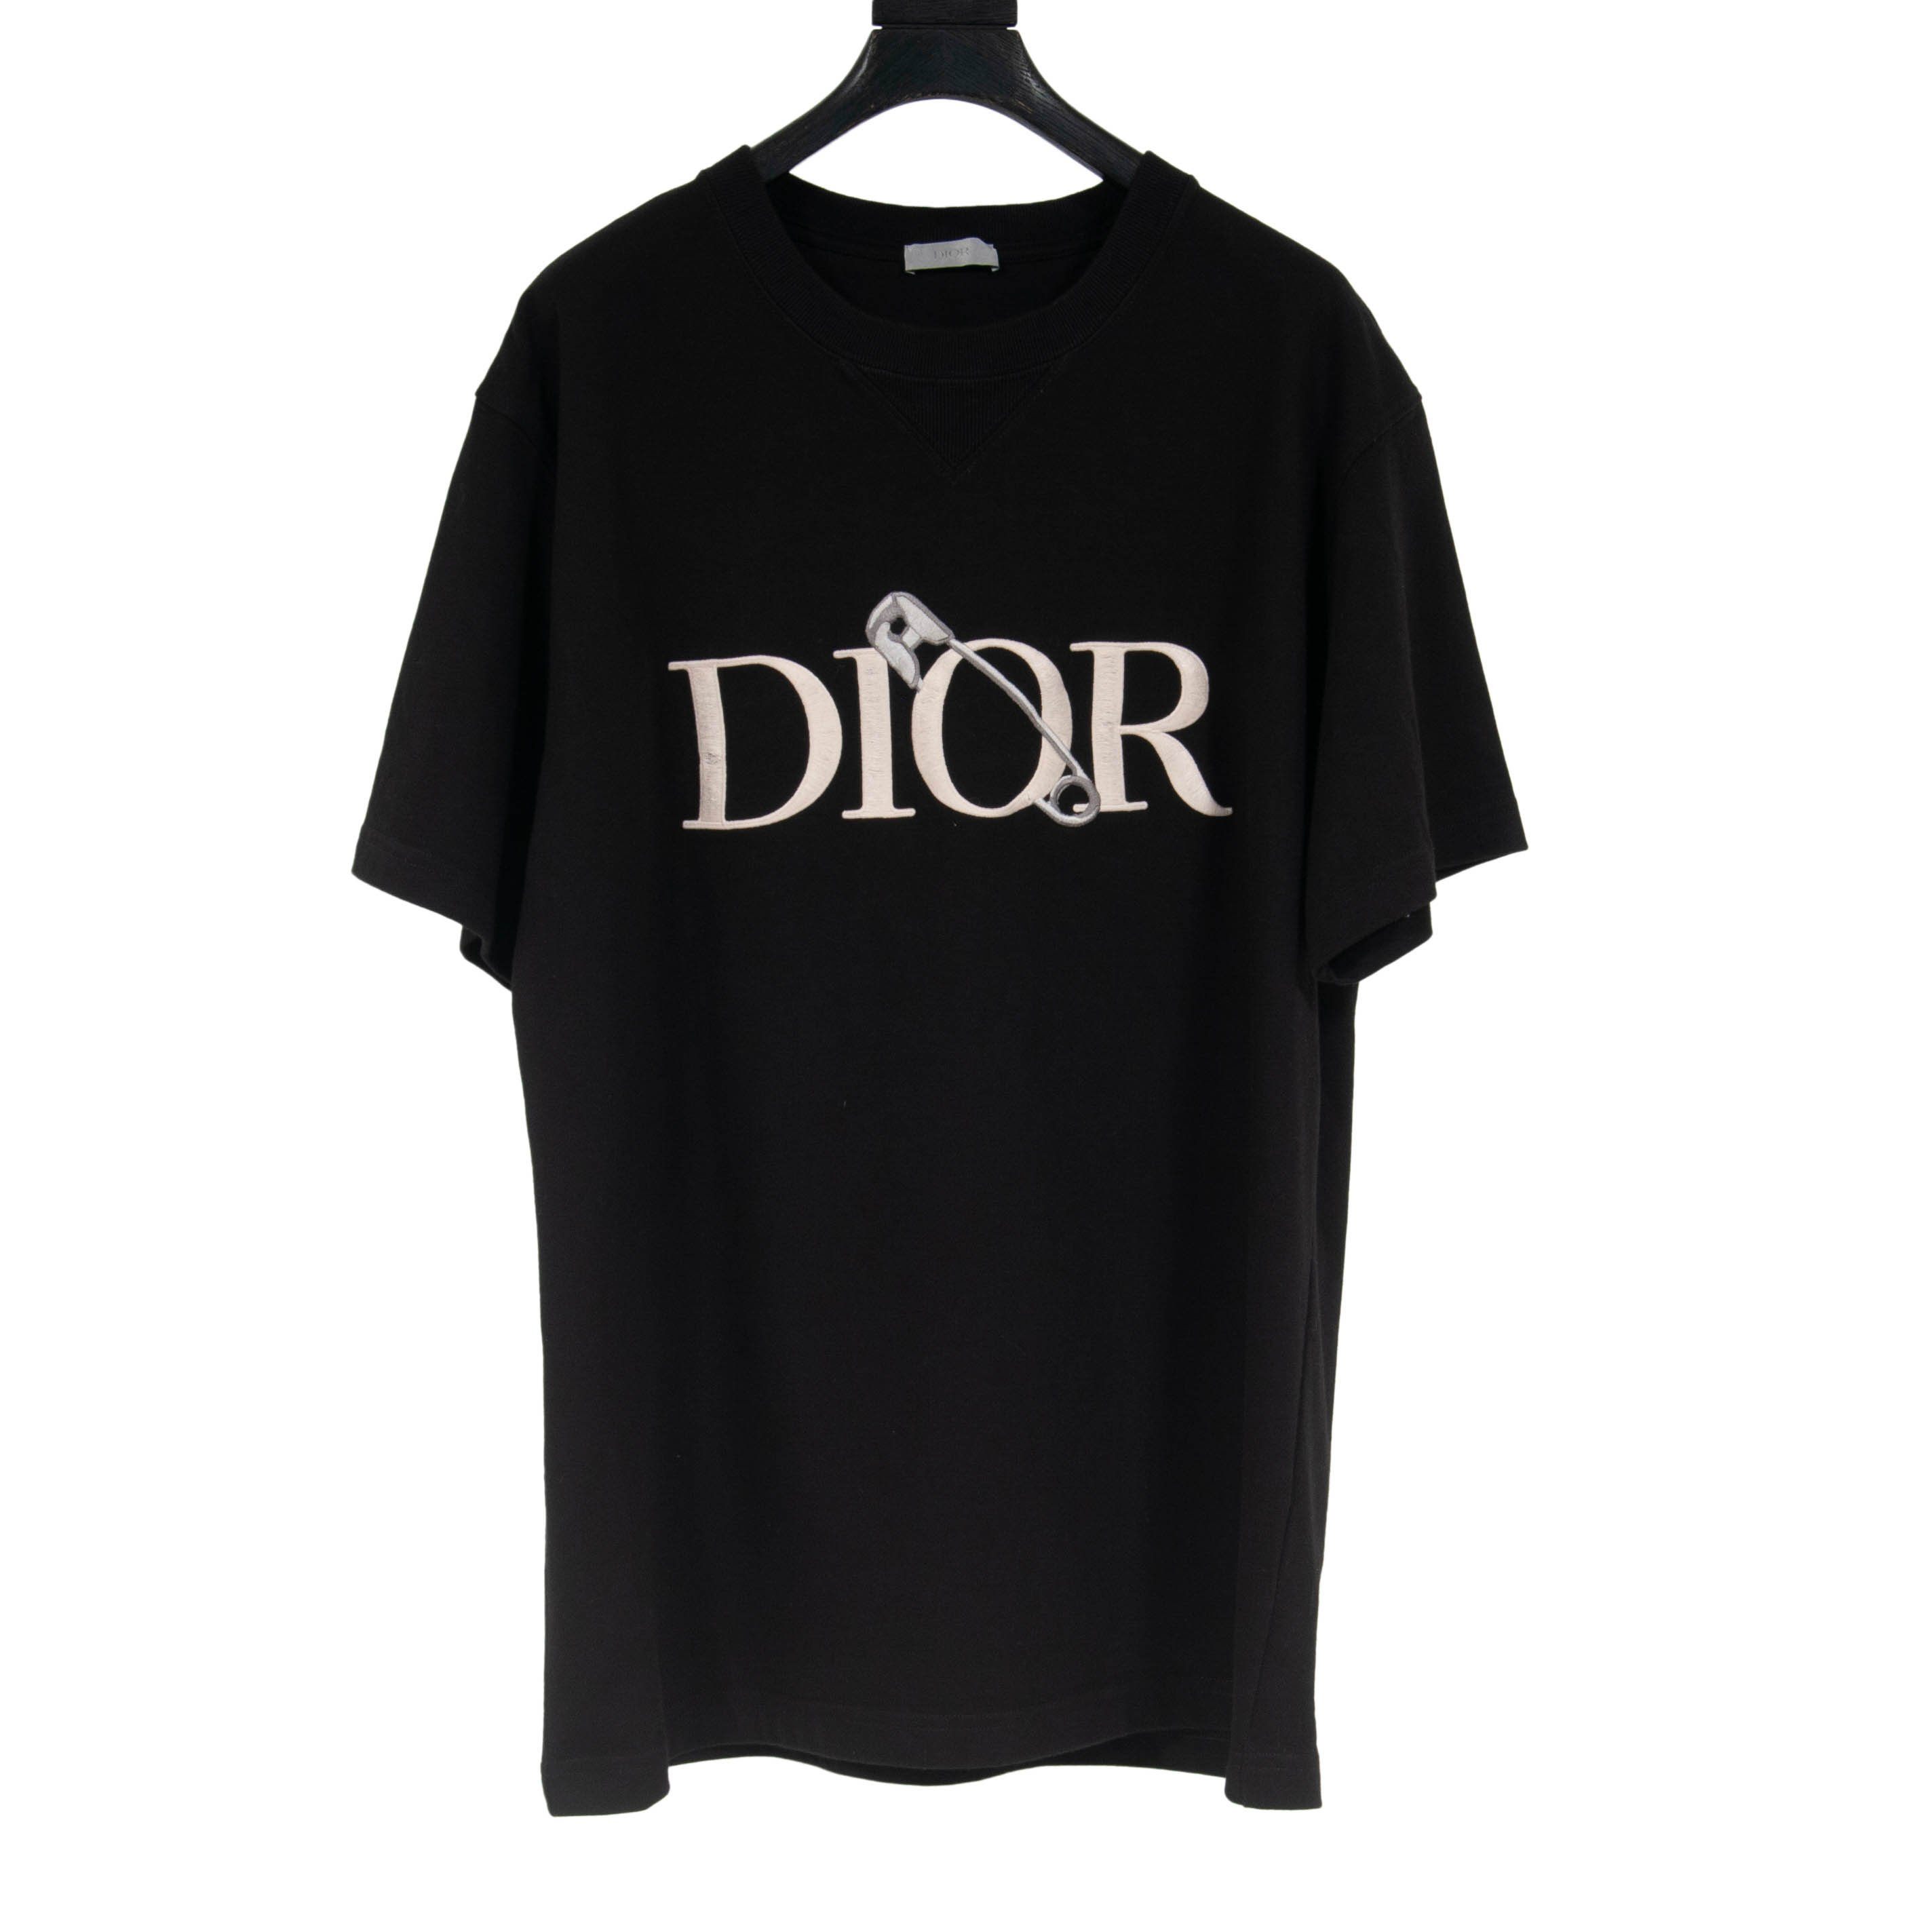 Dior X Judy Blame Tshirt Mens Fashion Tops  Sets Tshirts  Polo Shirts  on Carousell